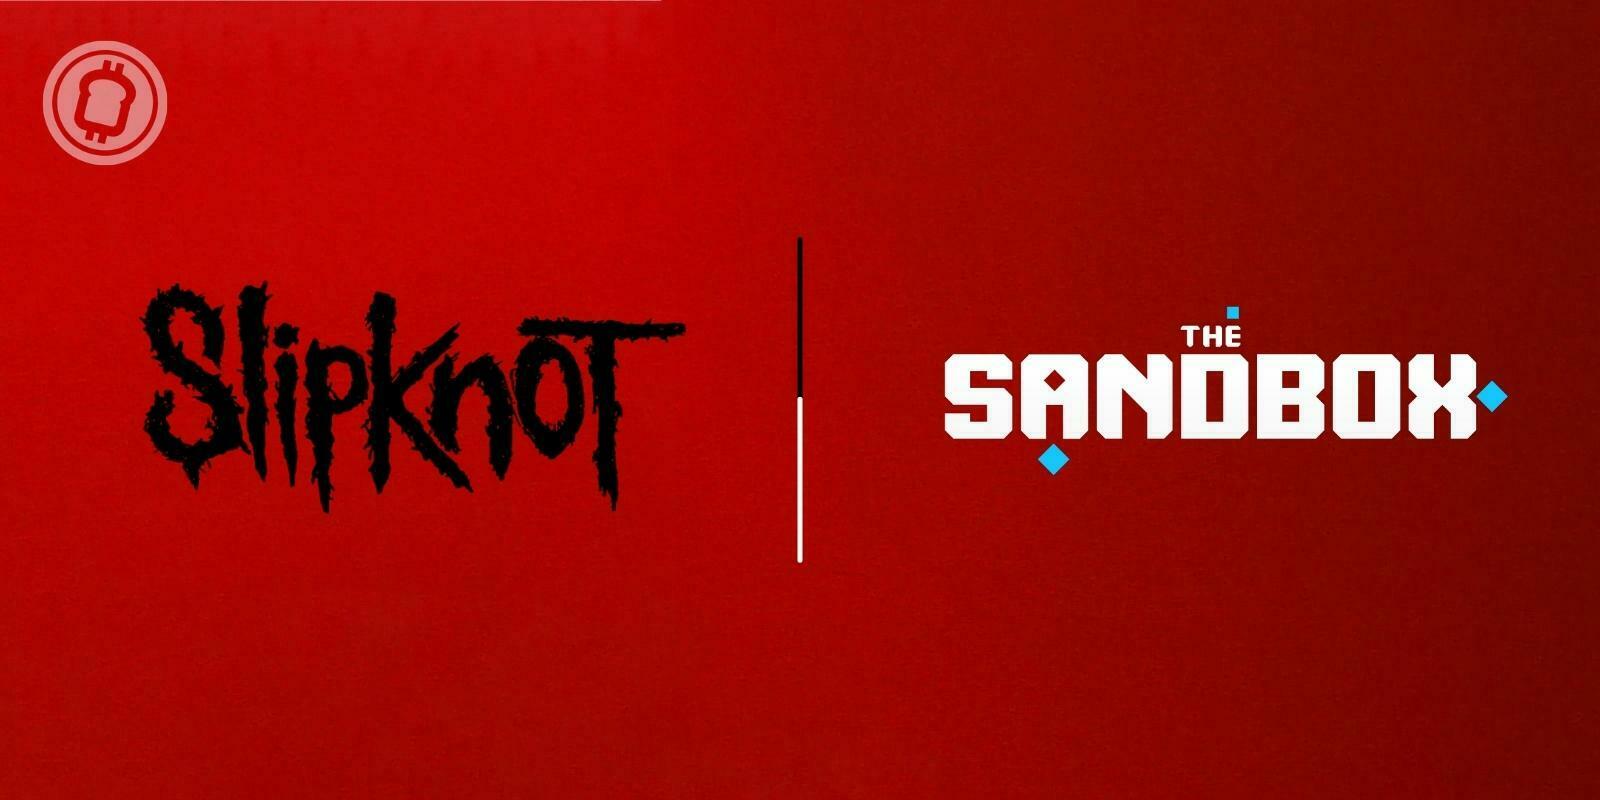 Le groupe de métal Slipknot s'associe à The Sandbox (SAND) pour créer un metaverse musical